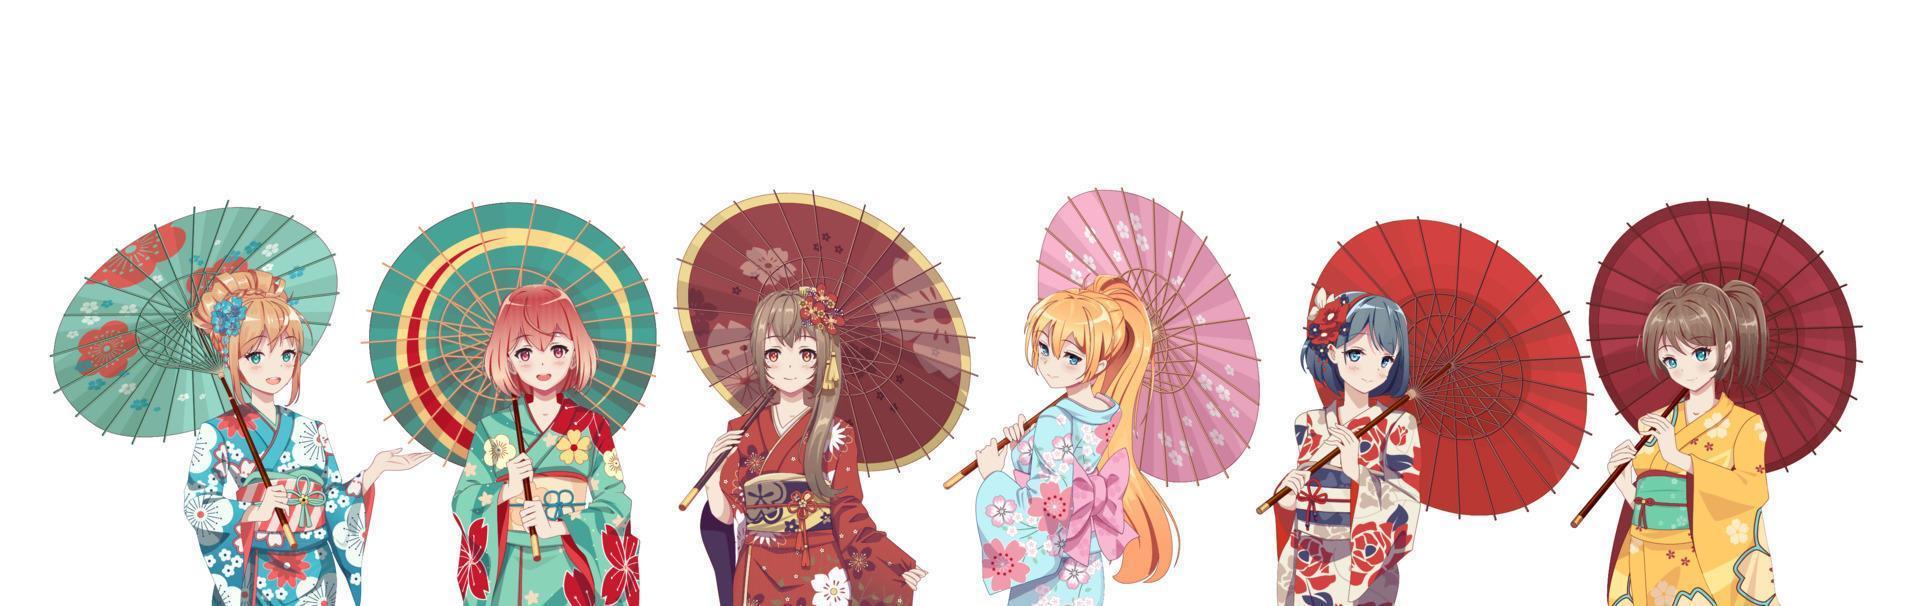 grupo de garotas de mangá de anime em traje tradicional de quimono japonês segurando guarda-chuva de papel. ilustração vetorial em fundo isolado vetor